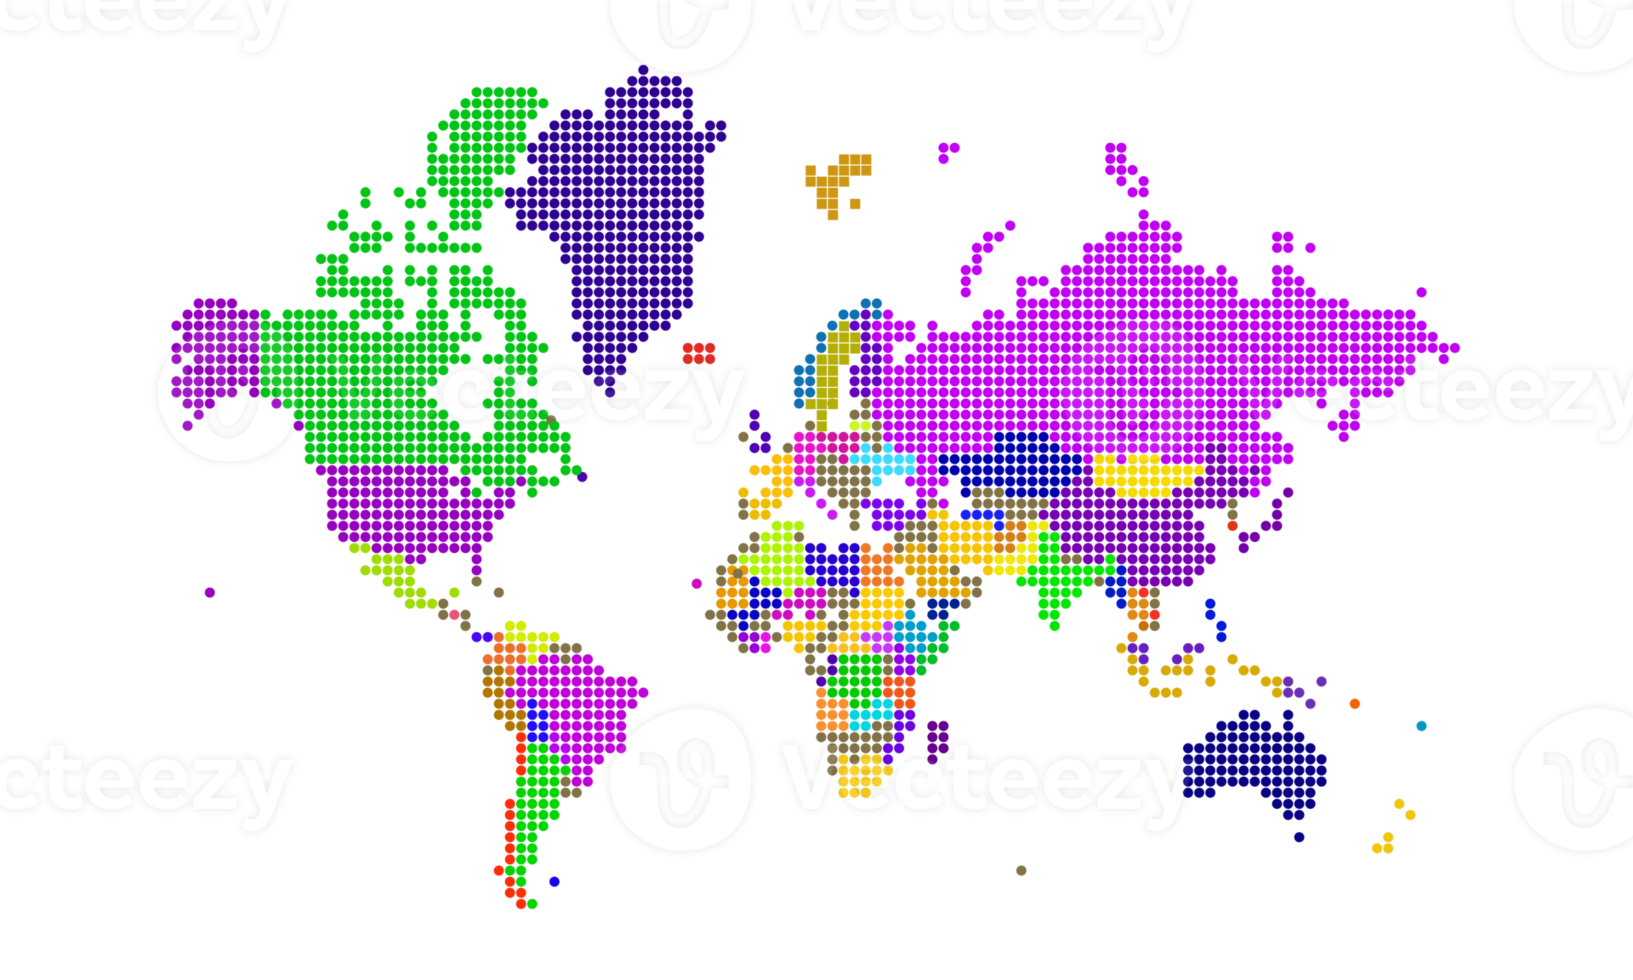 pontos do mapa do mundo. modelo de mapa do mundo com continentes, américa do norte e sul, europa e ásia, áfrica e austrália png